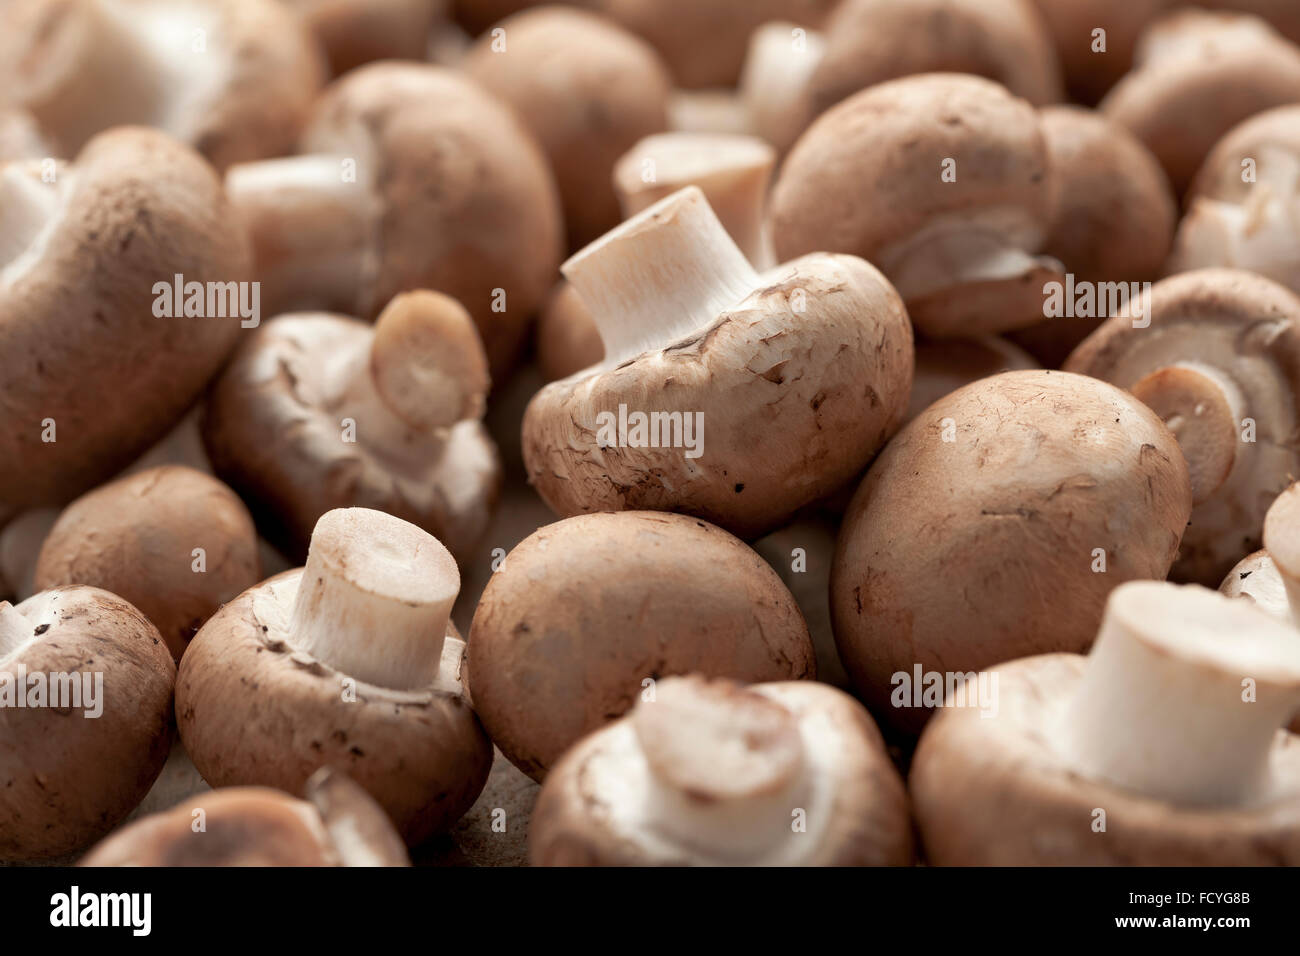 Fresh chestnut mushrooms full frame Stock Photo